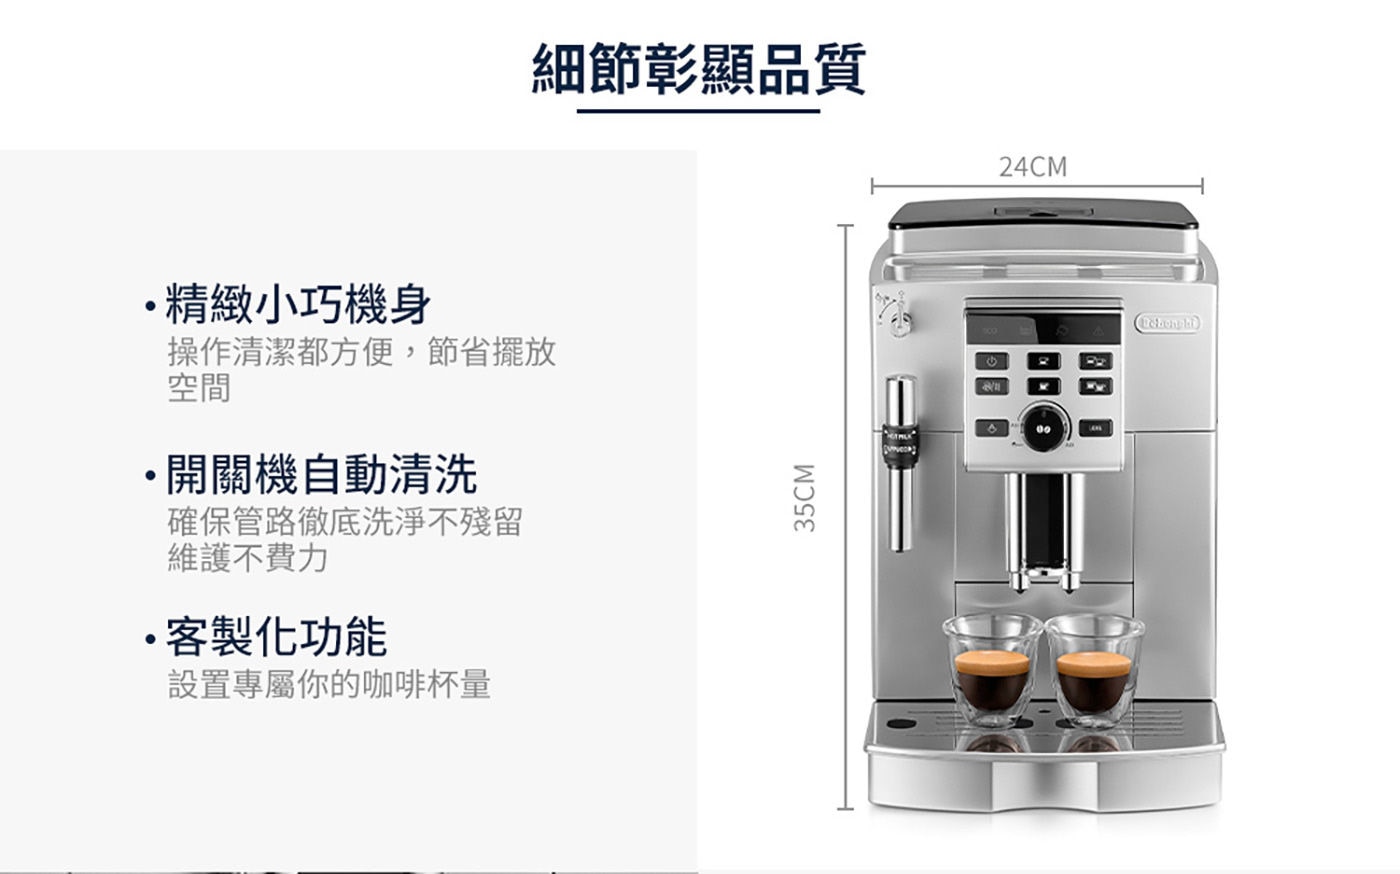 迪朗奇 全自動義式咖啡機 精緻小巧機身 開關機自動清洗 客製化功能